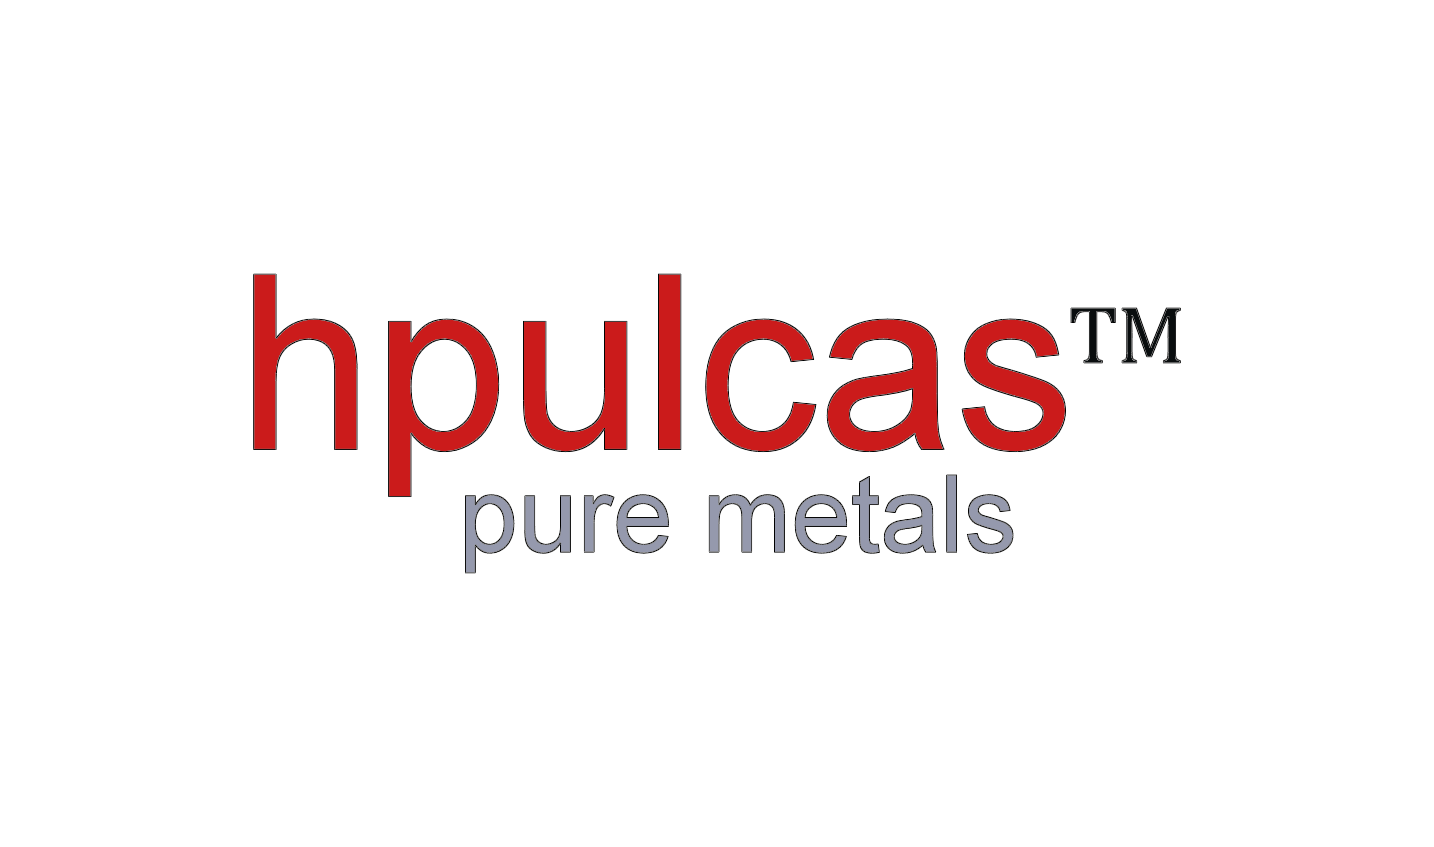 hpulcas GmbH